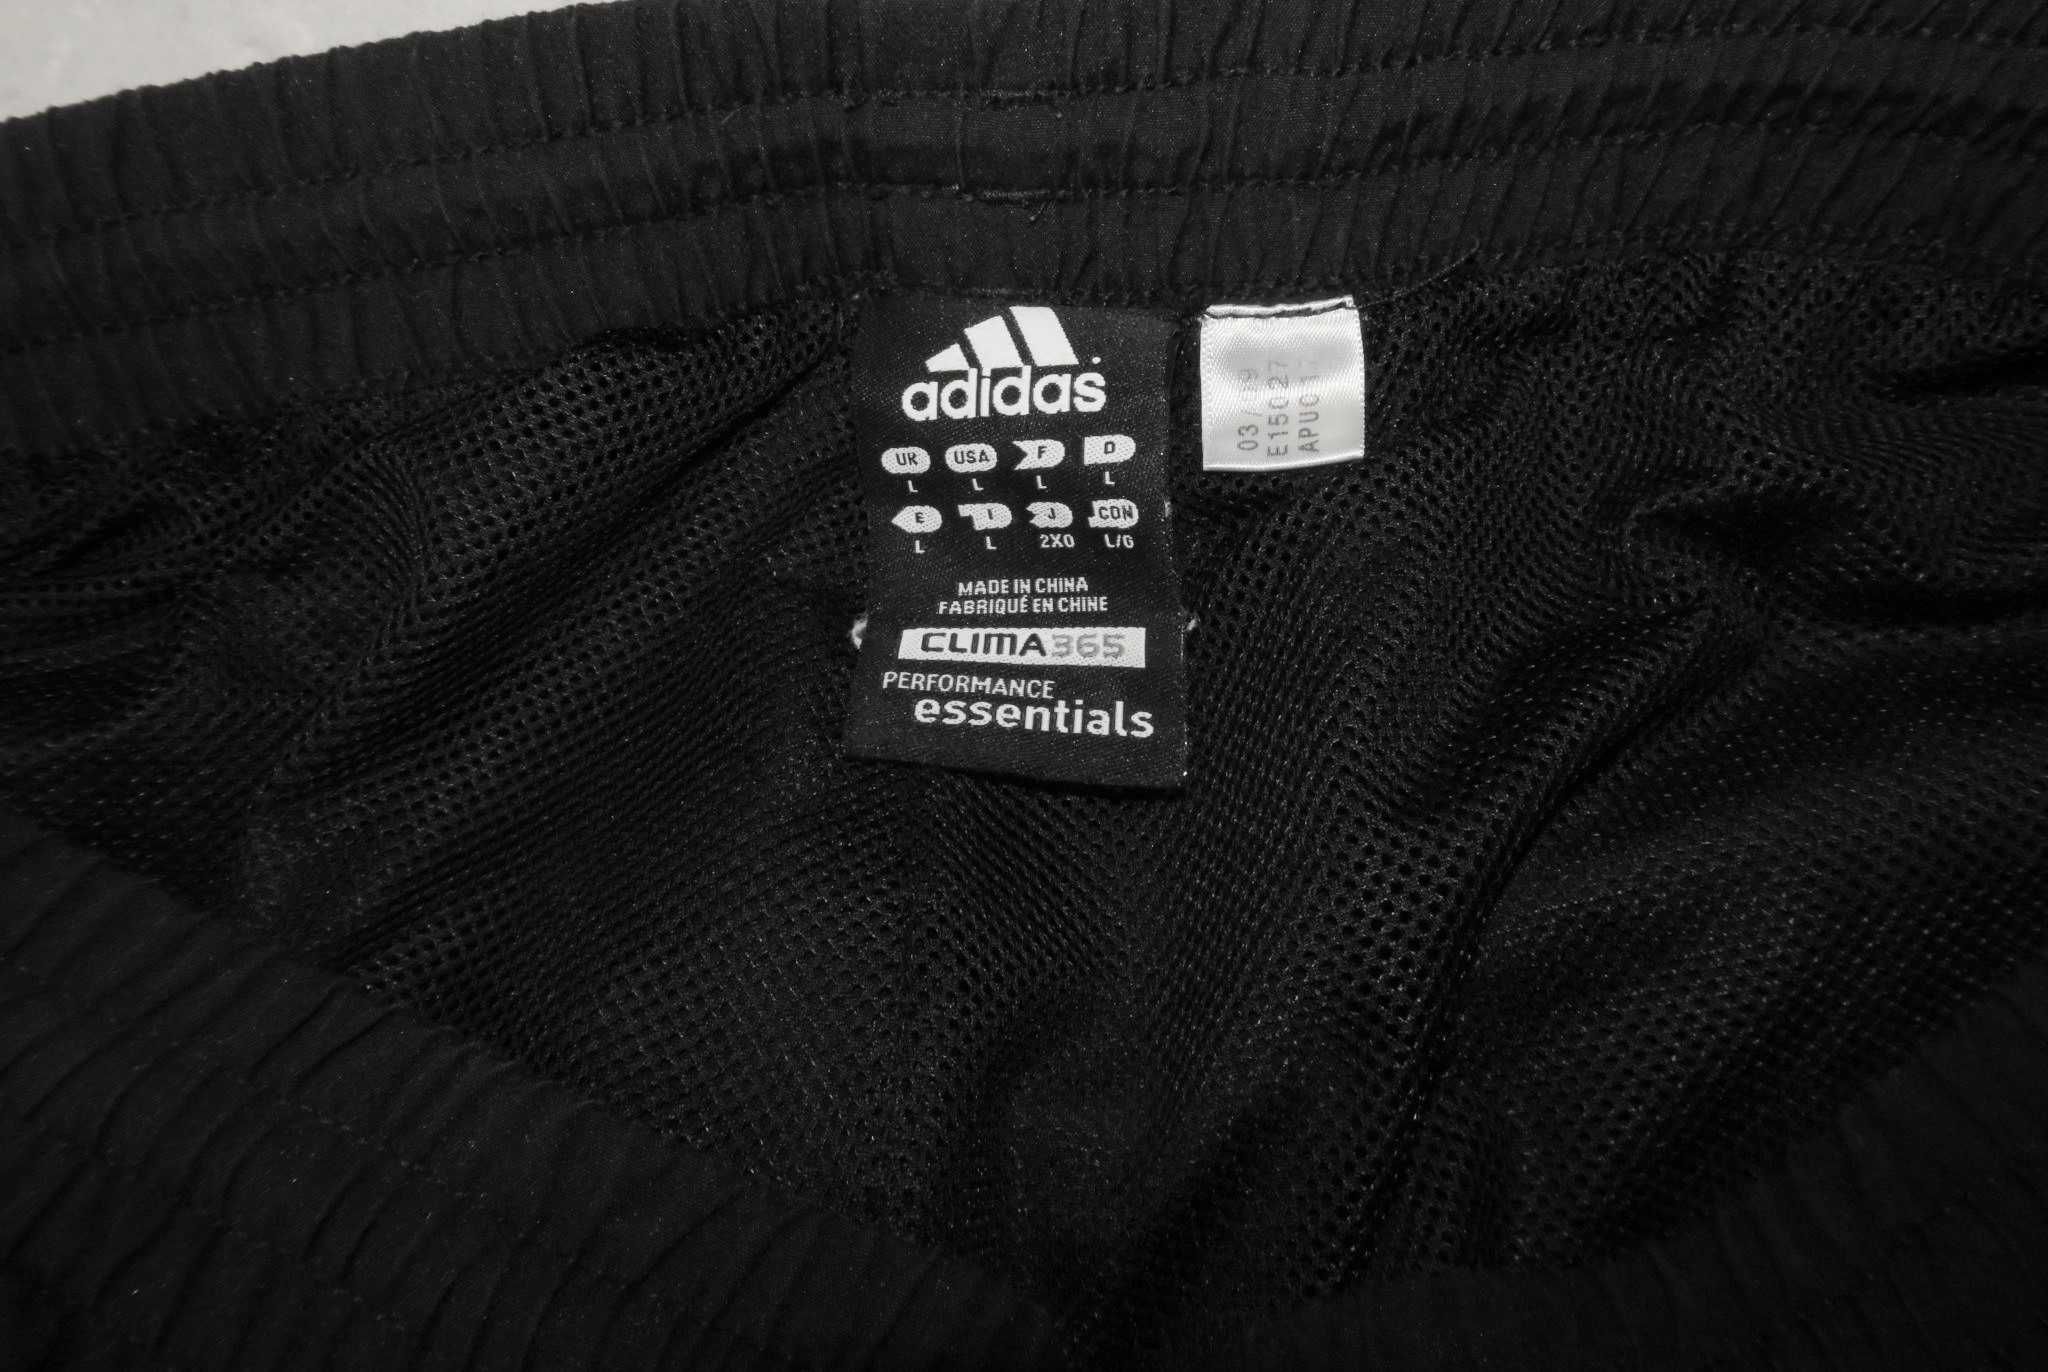 Adidas spodnie dresowe ze ściągaczami L